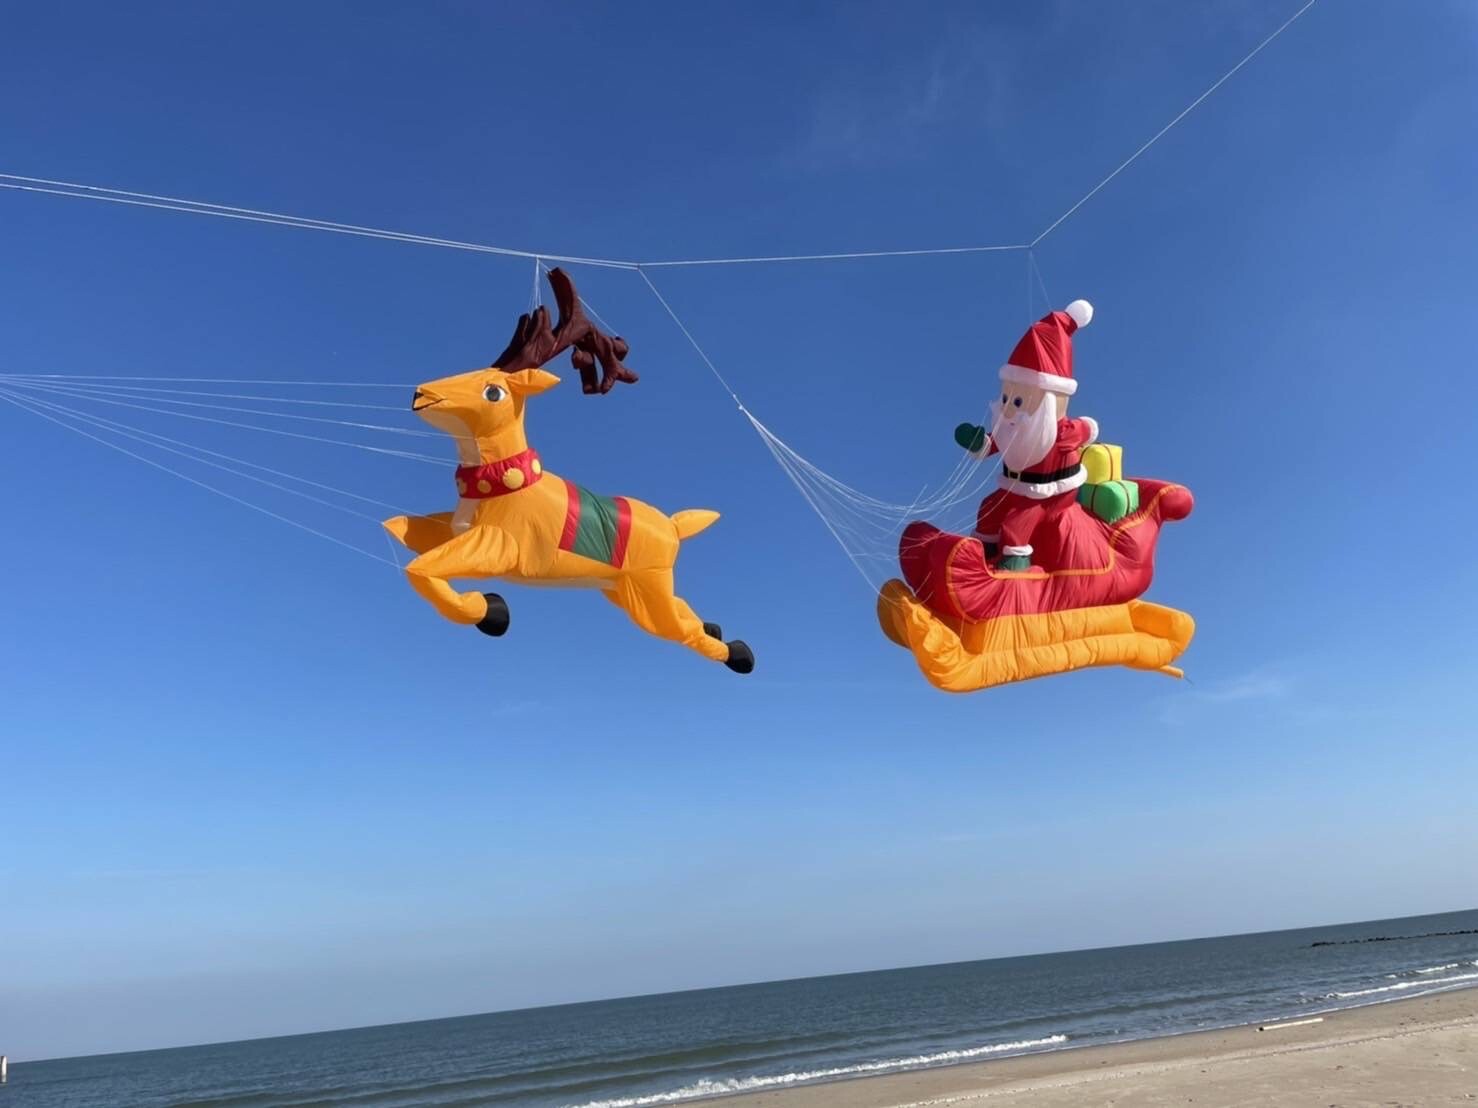 Christmas Kite Festival 2021 เทศกาลว่าวครั้งใหญ่ 24-26 ธ.ค.64 ที่ เซ็นทรัล ศรีราชา